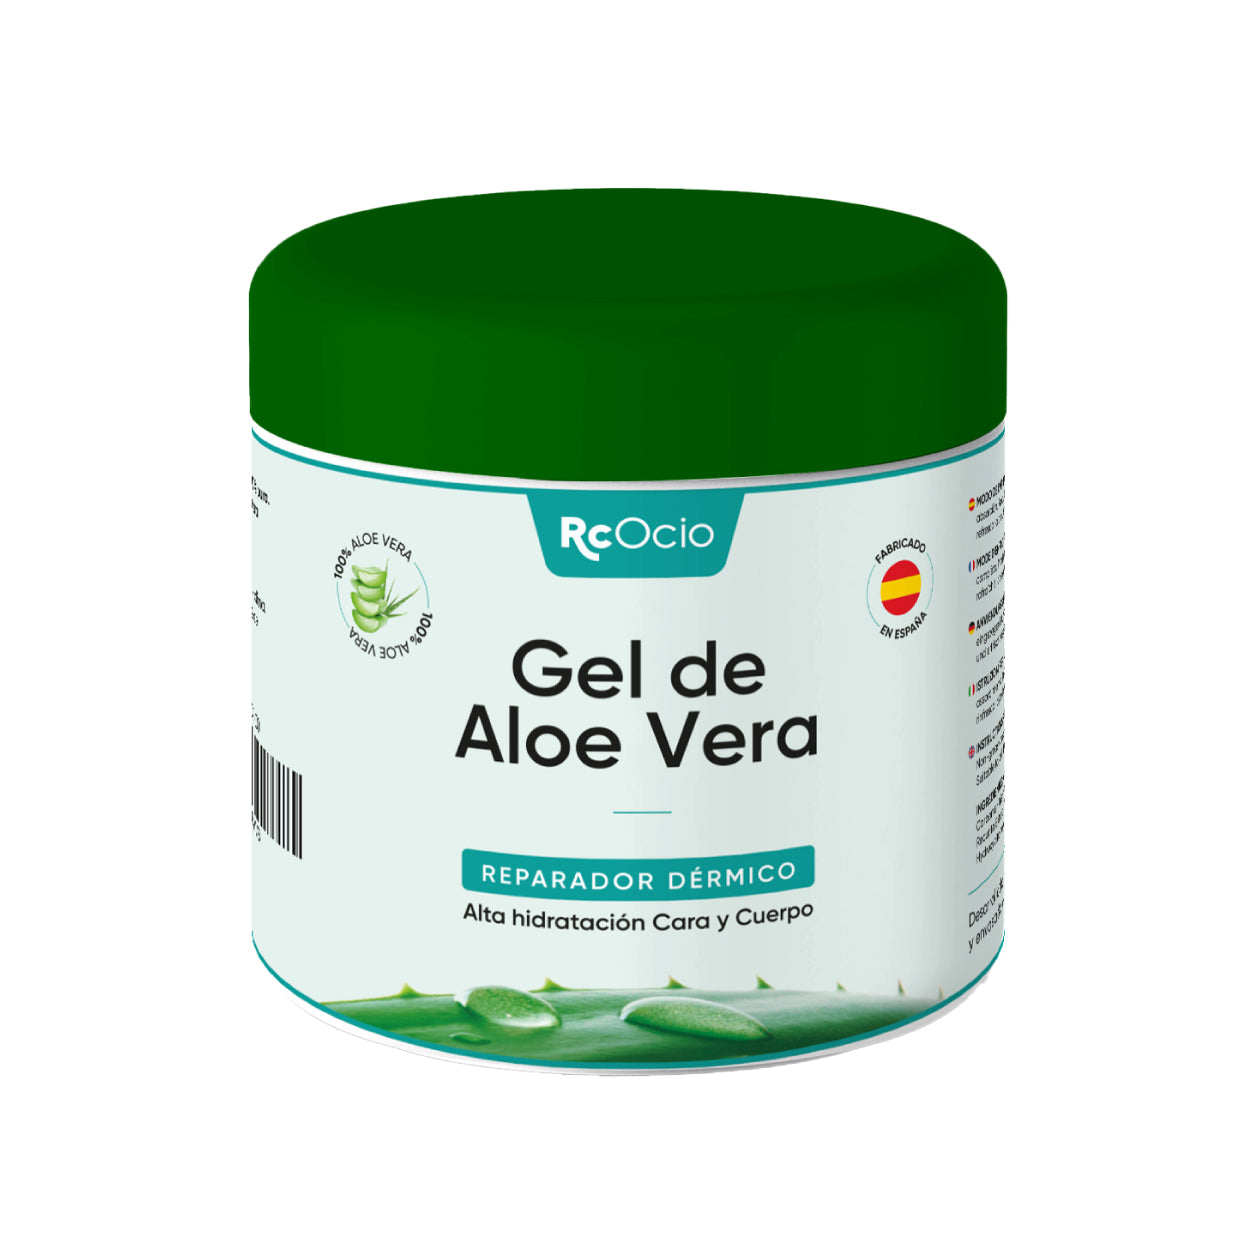 Gel Aloe vera 100% de Canarias crema hidratante natural 500 ml